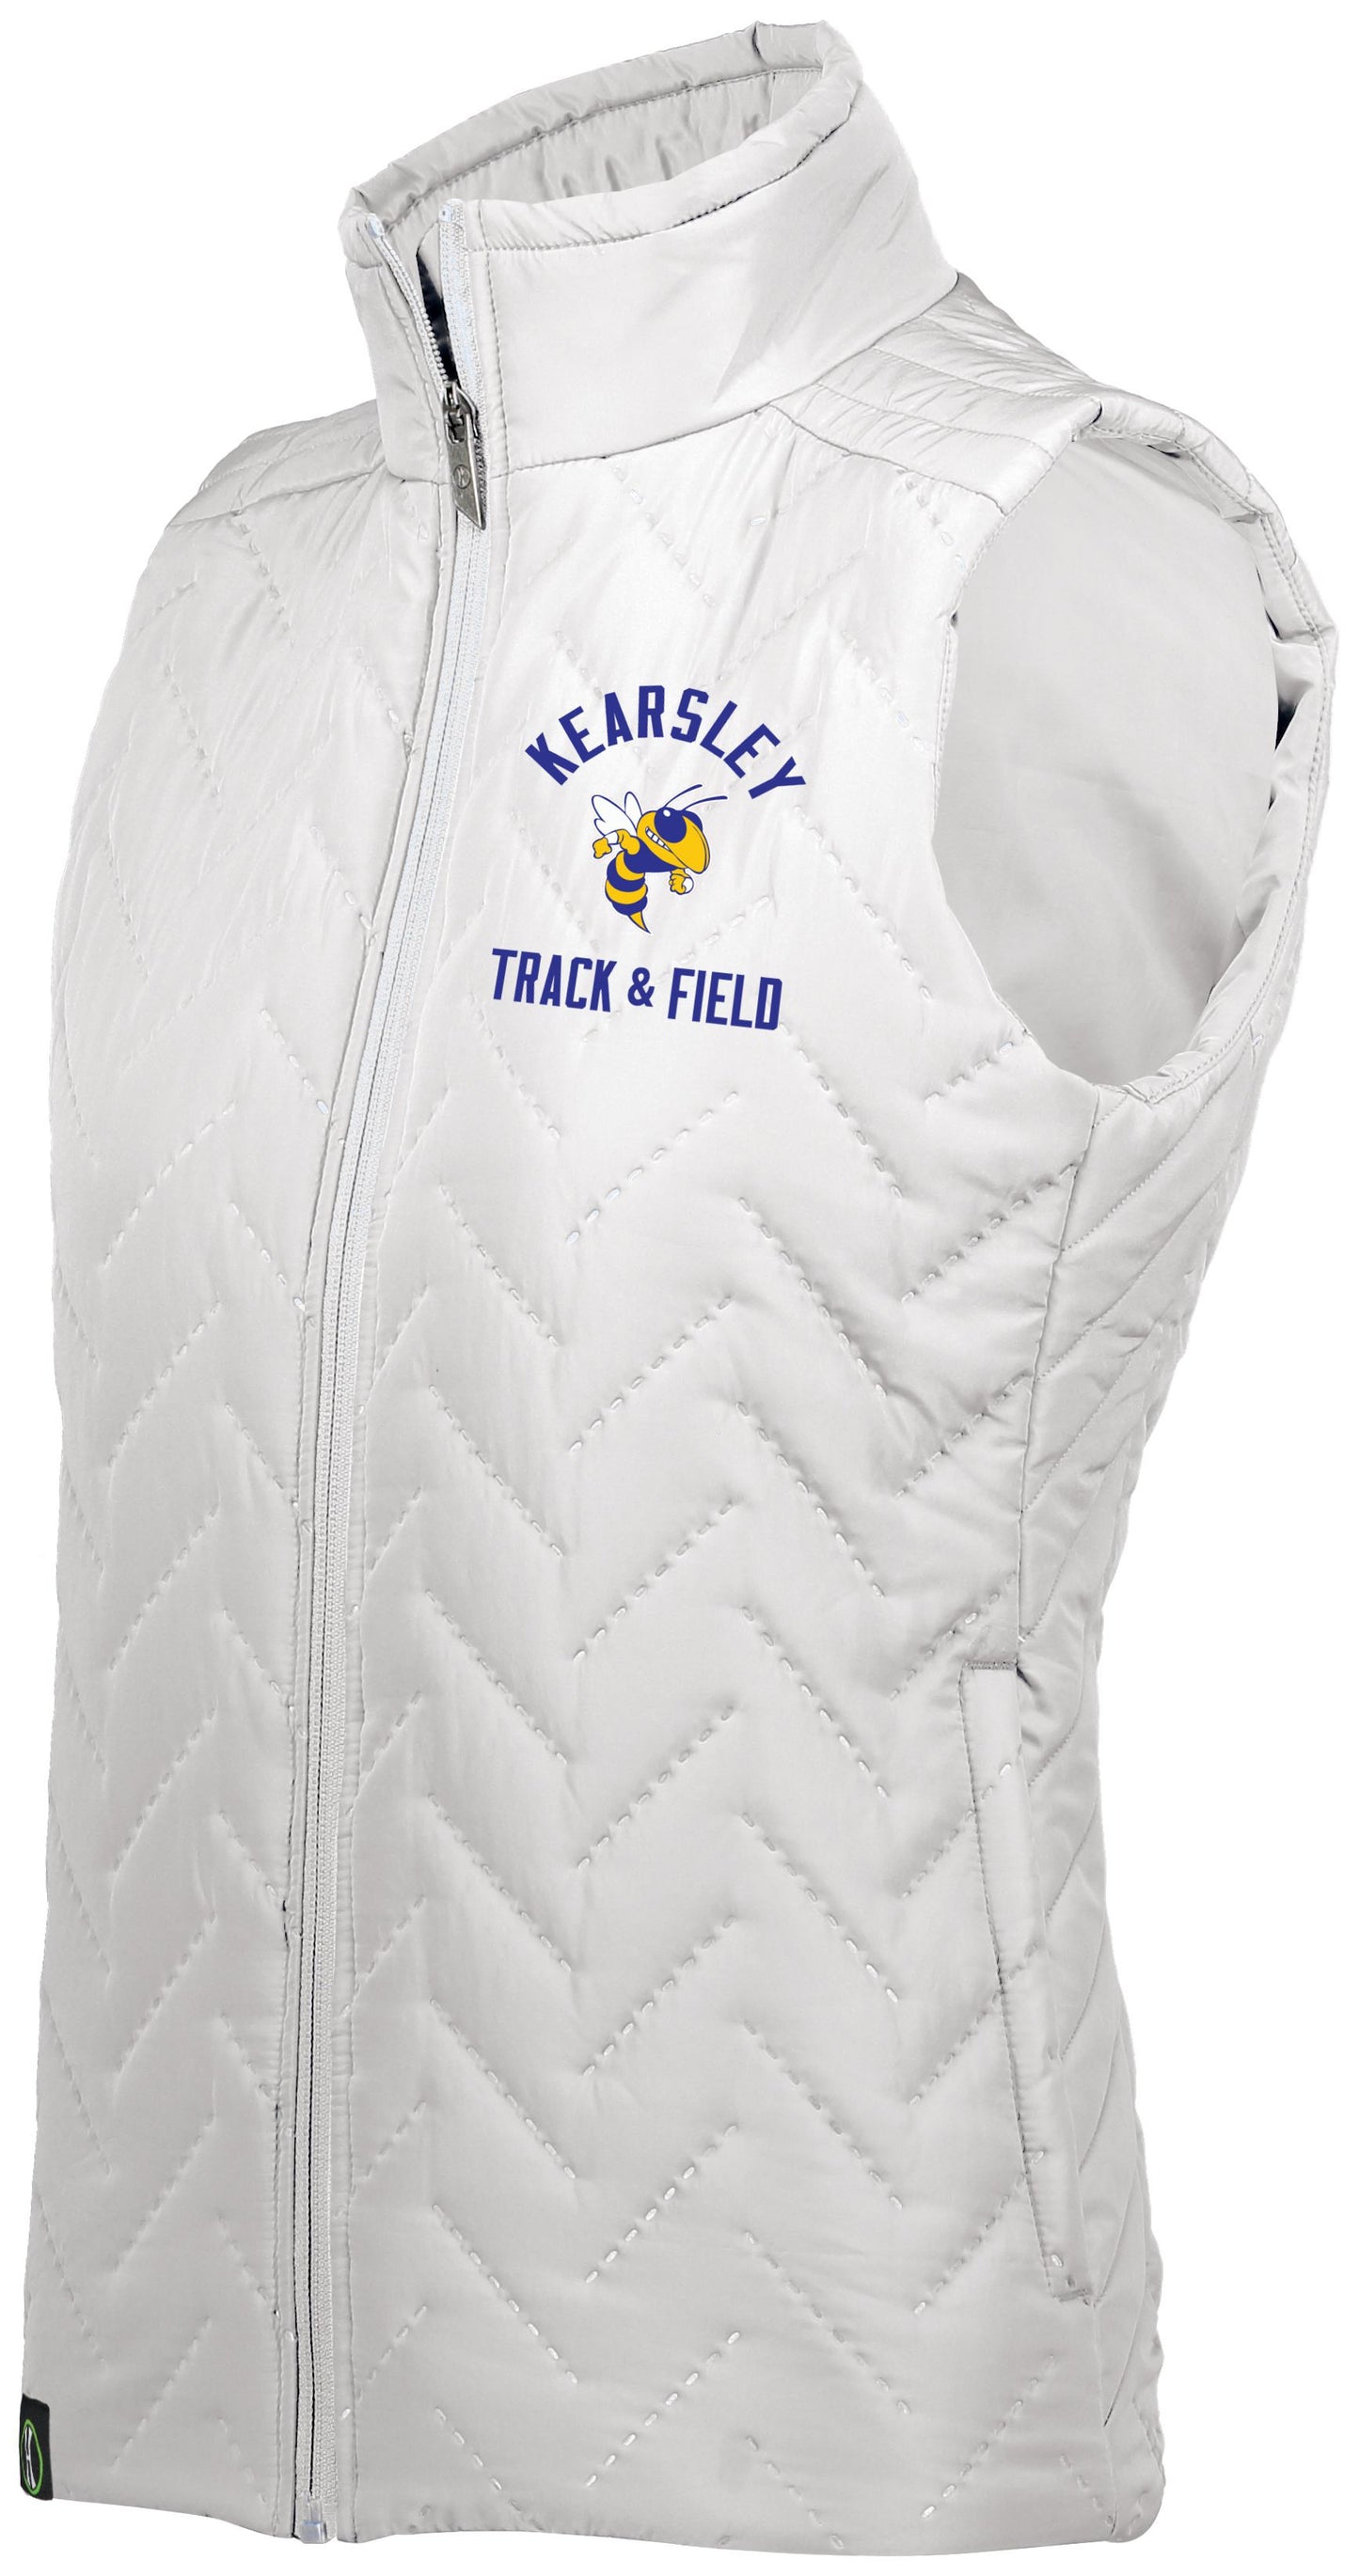 Kearsley Track & Field Ladies Repreve Vest